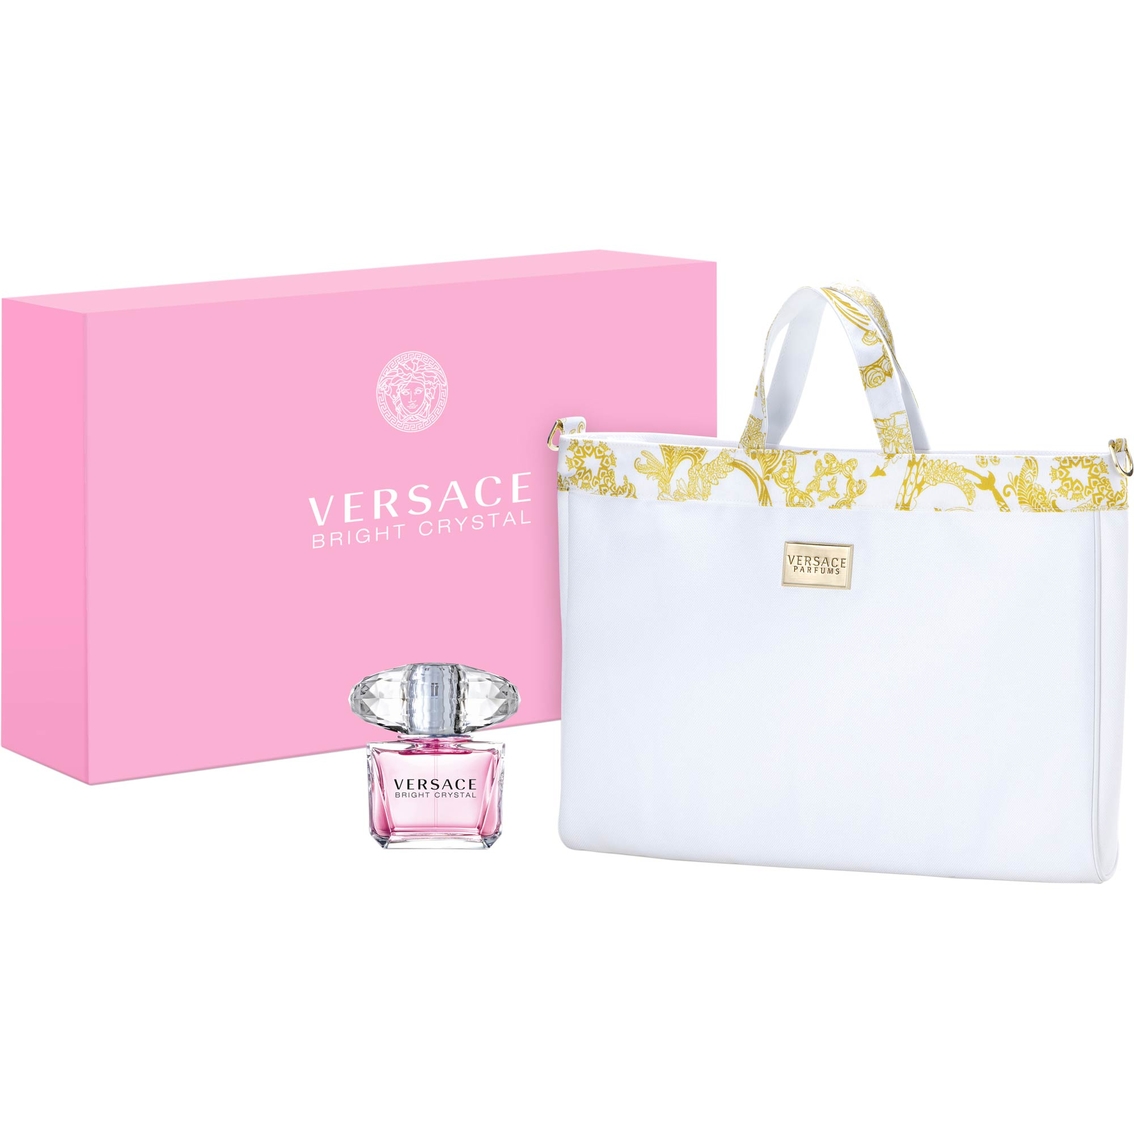 Versace Bright Crystal Eau De Toilette Spray With Versace ...